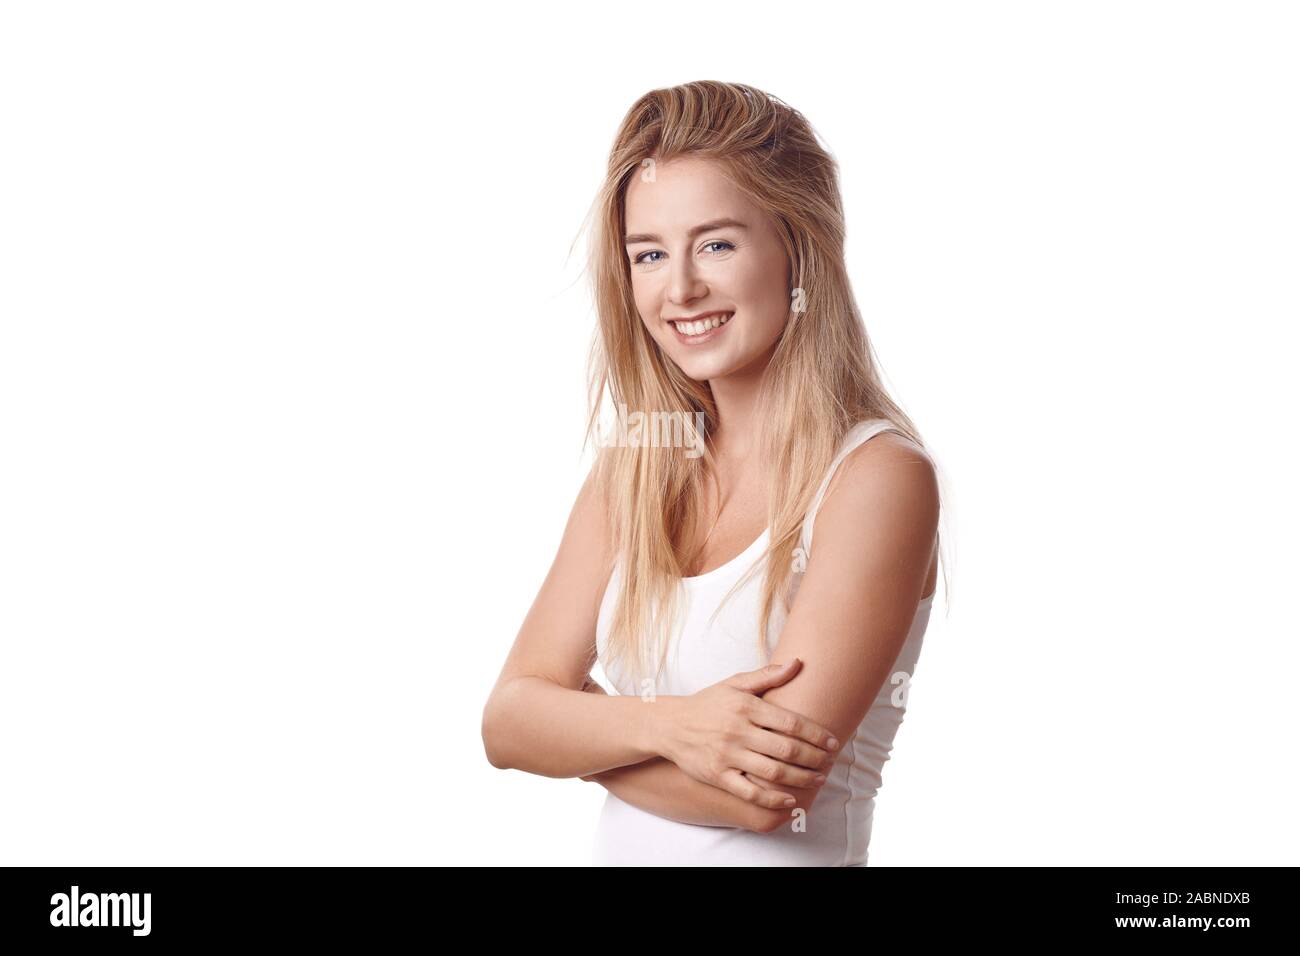 Schöne blonde junge Frau im weißen Hemd mit Waffen gegen weißen Hintergrund gefaltet, lächelnd und mit Blick auf die Kamera. Halbe-halbe Umdrehung - Länge po Stockfoto